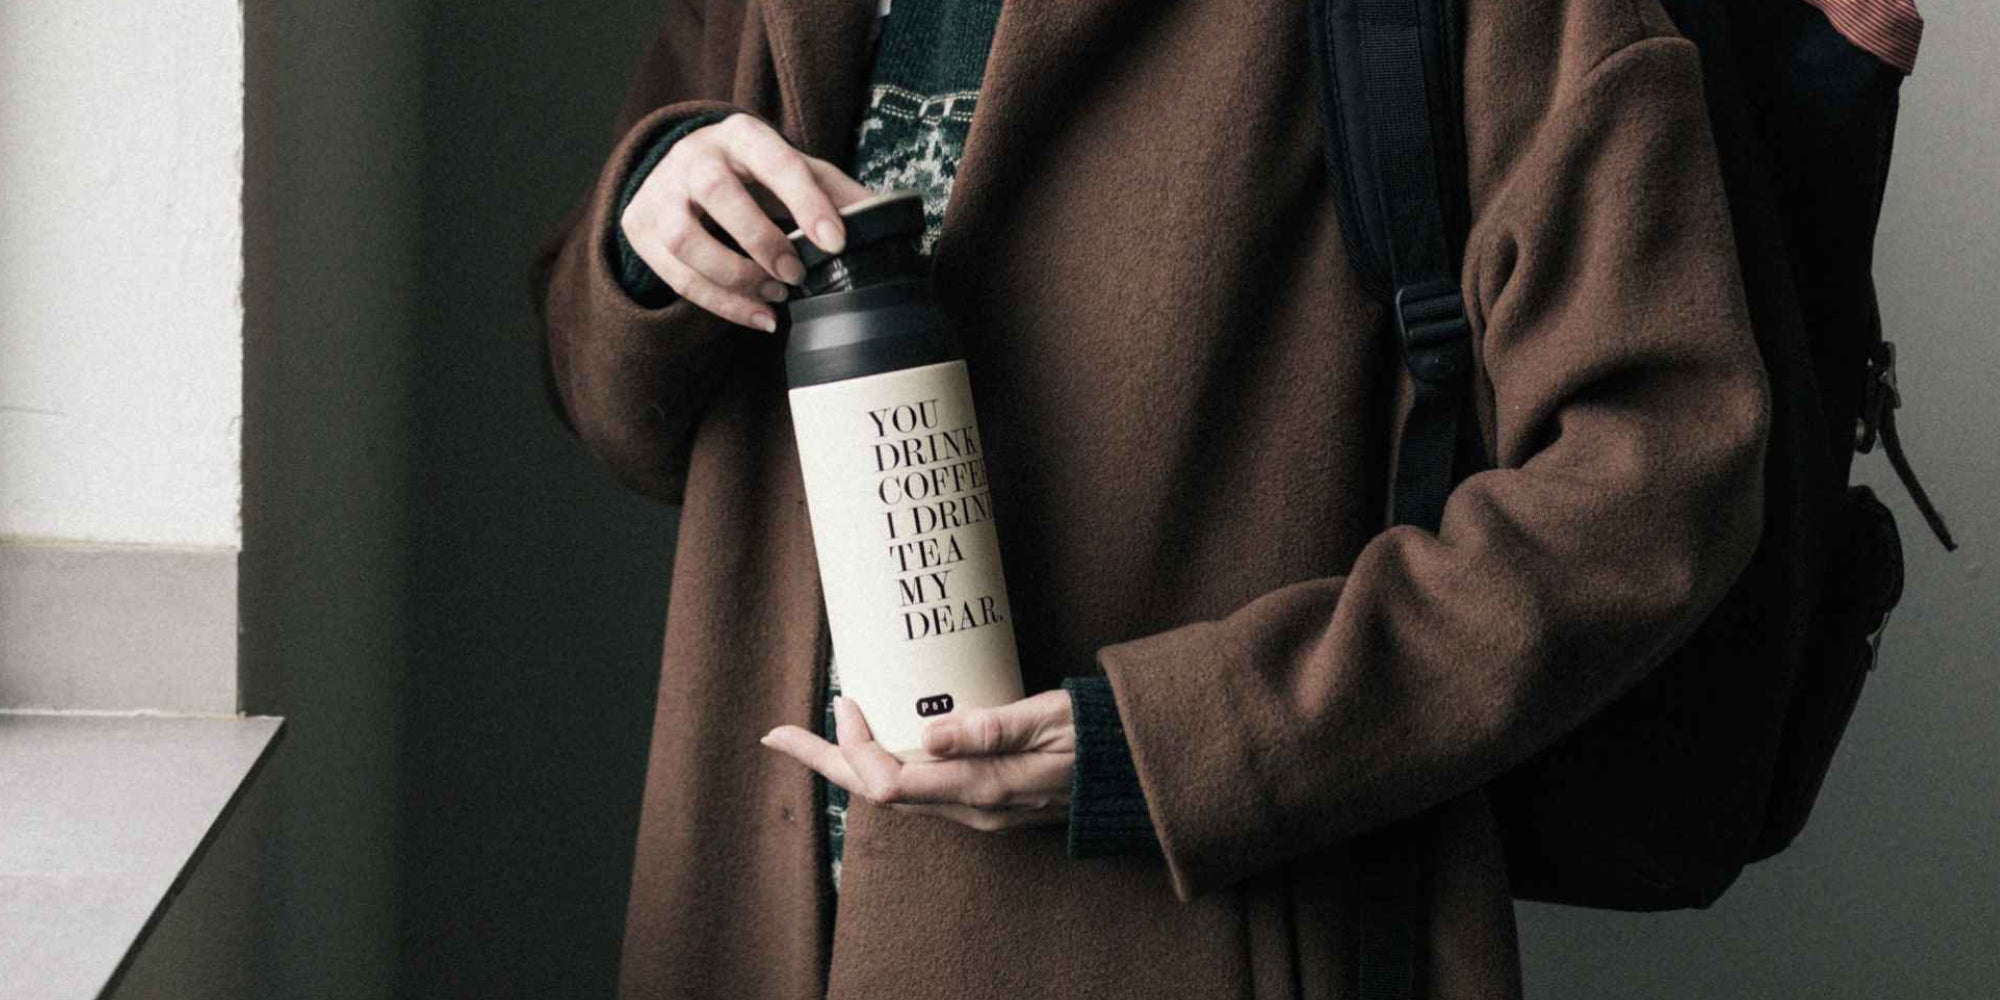 Nomad Flask, Insulated Travel Mug, 350ml - Black / 350ml